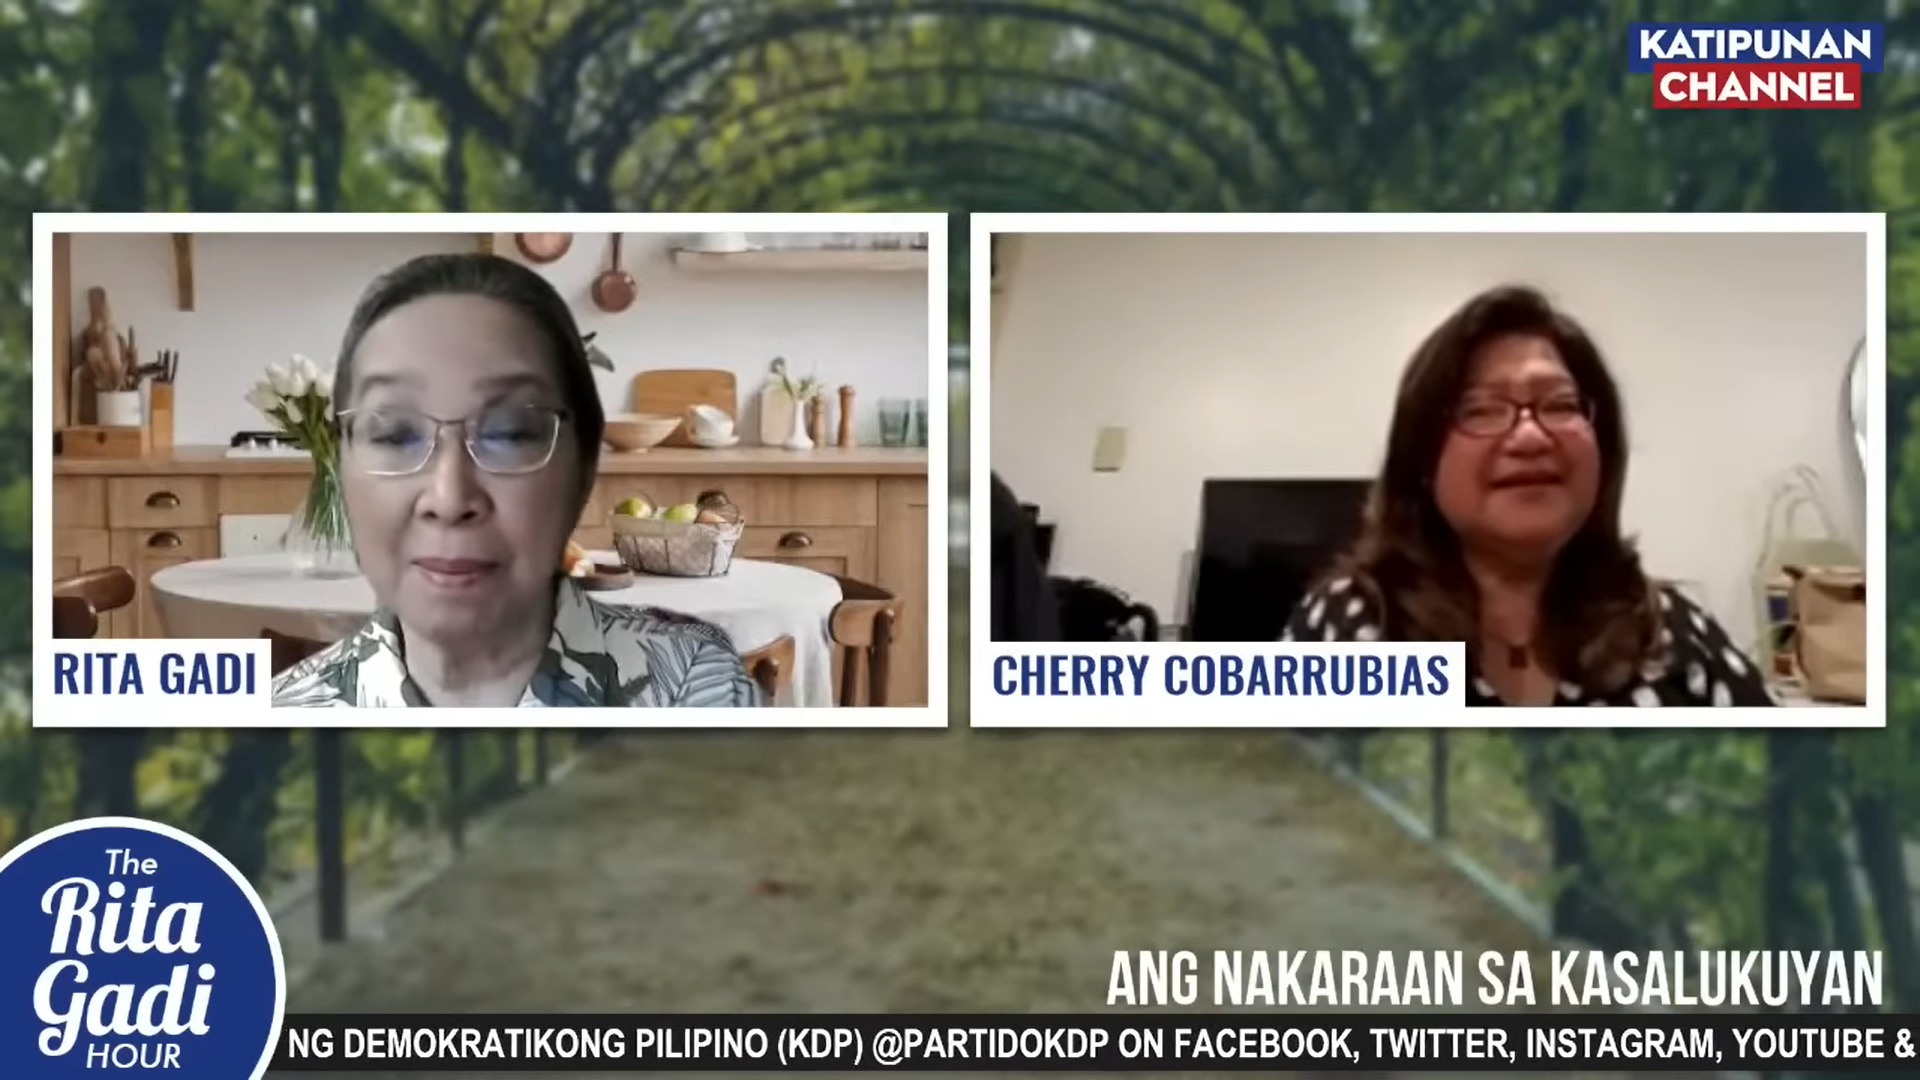 Rita Gadi and Cherry Cobarrubias, screencap from the Katipunan ng Demokratikong Pilipino YouTube channel